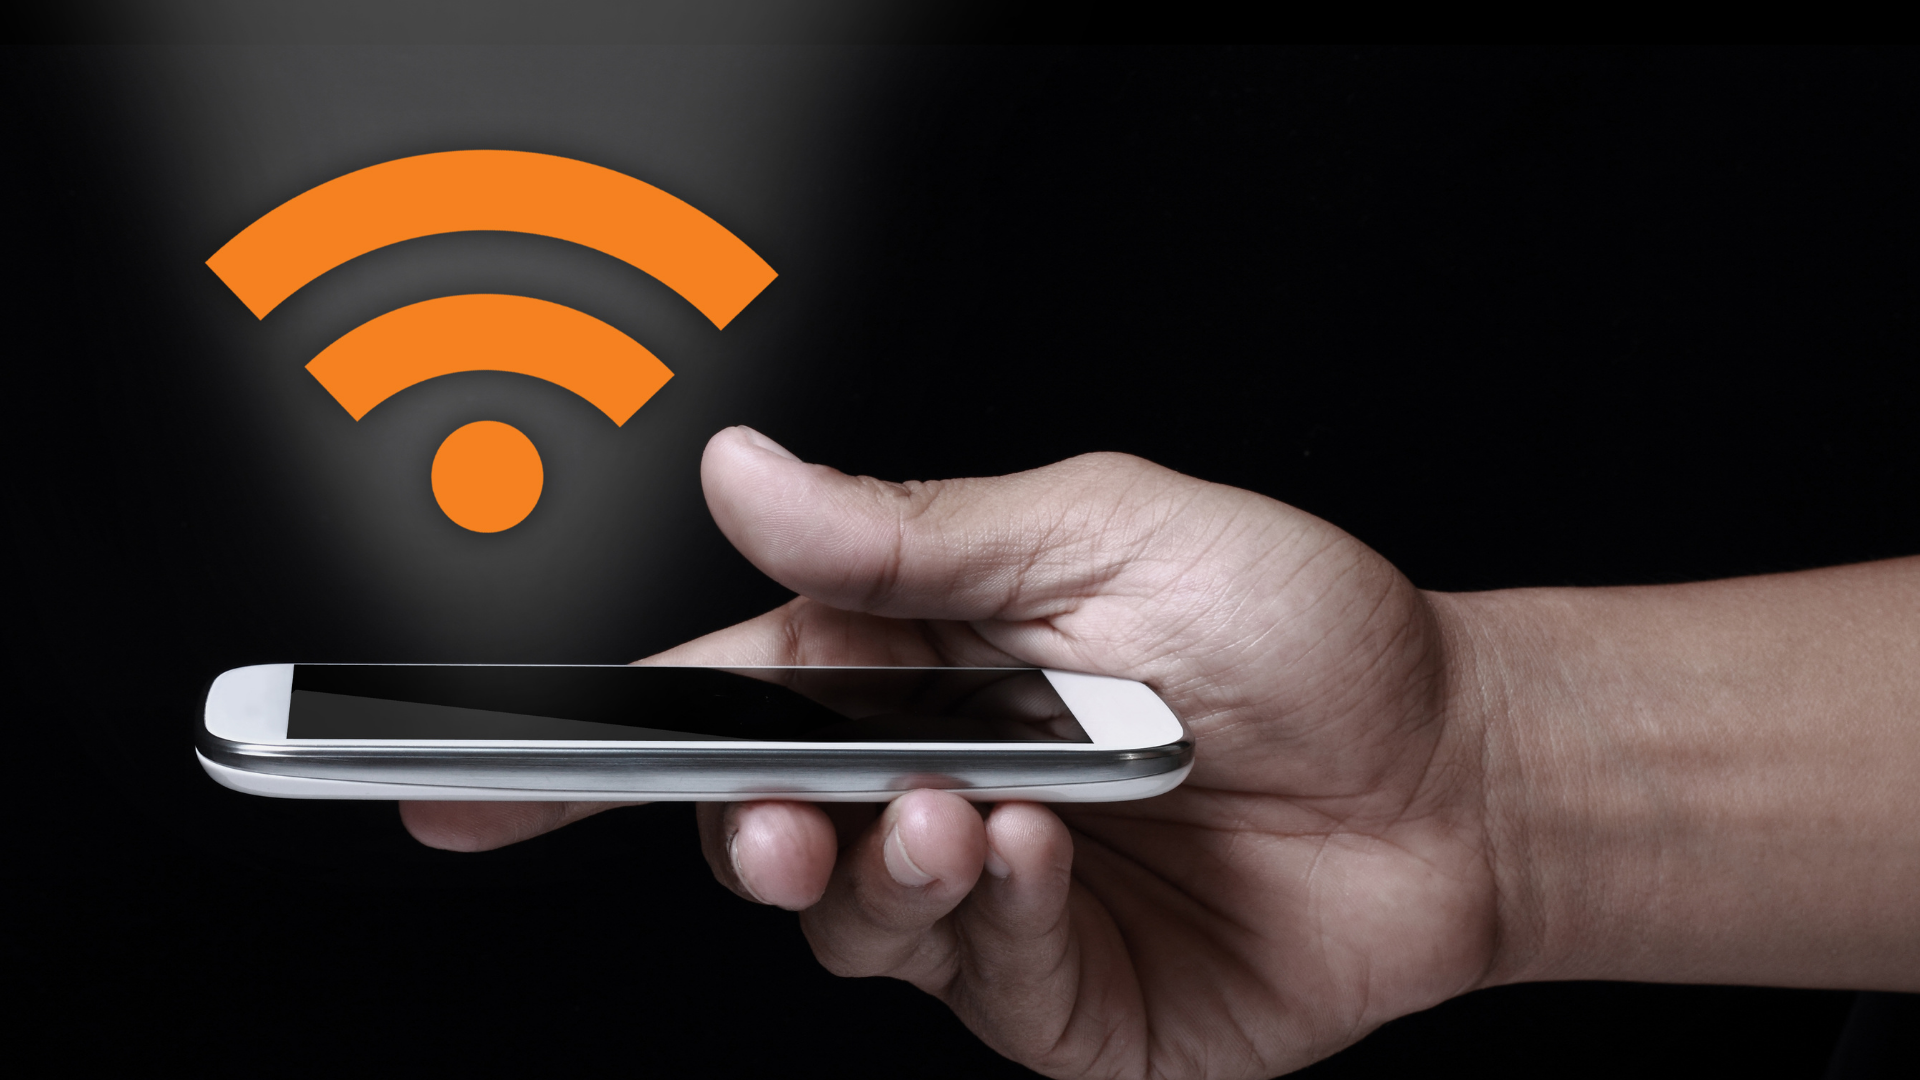 มือถือ Redmi ต่อ Wi-Fi ไม่ได้ - ร้านซ่อมโทรศัพท์มือถือ ออนไลน์ - ร้านซ่อมโทรศัพท์มือถือ ออนไลน์